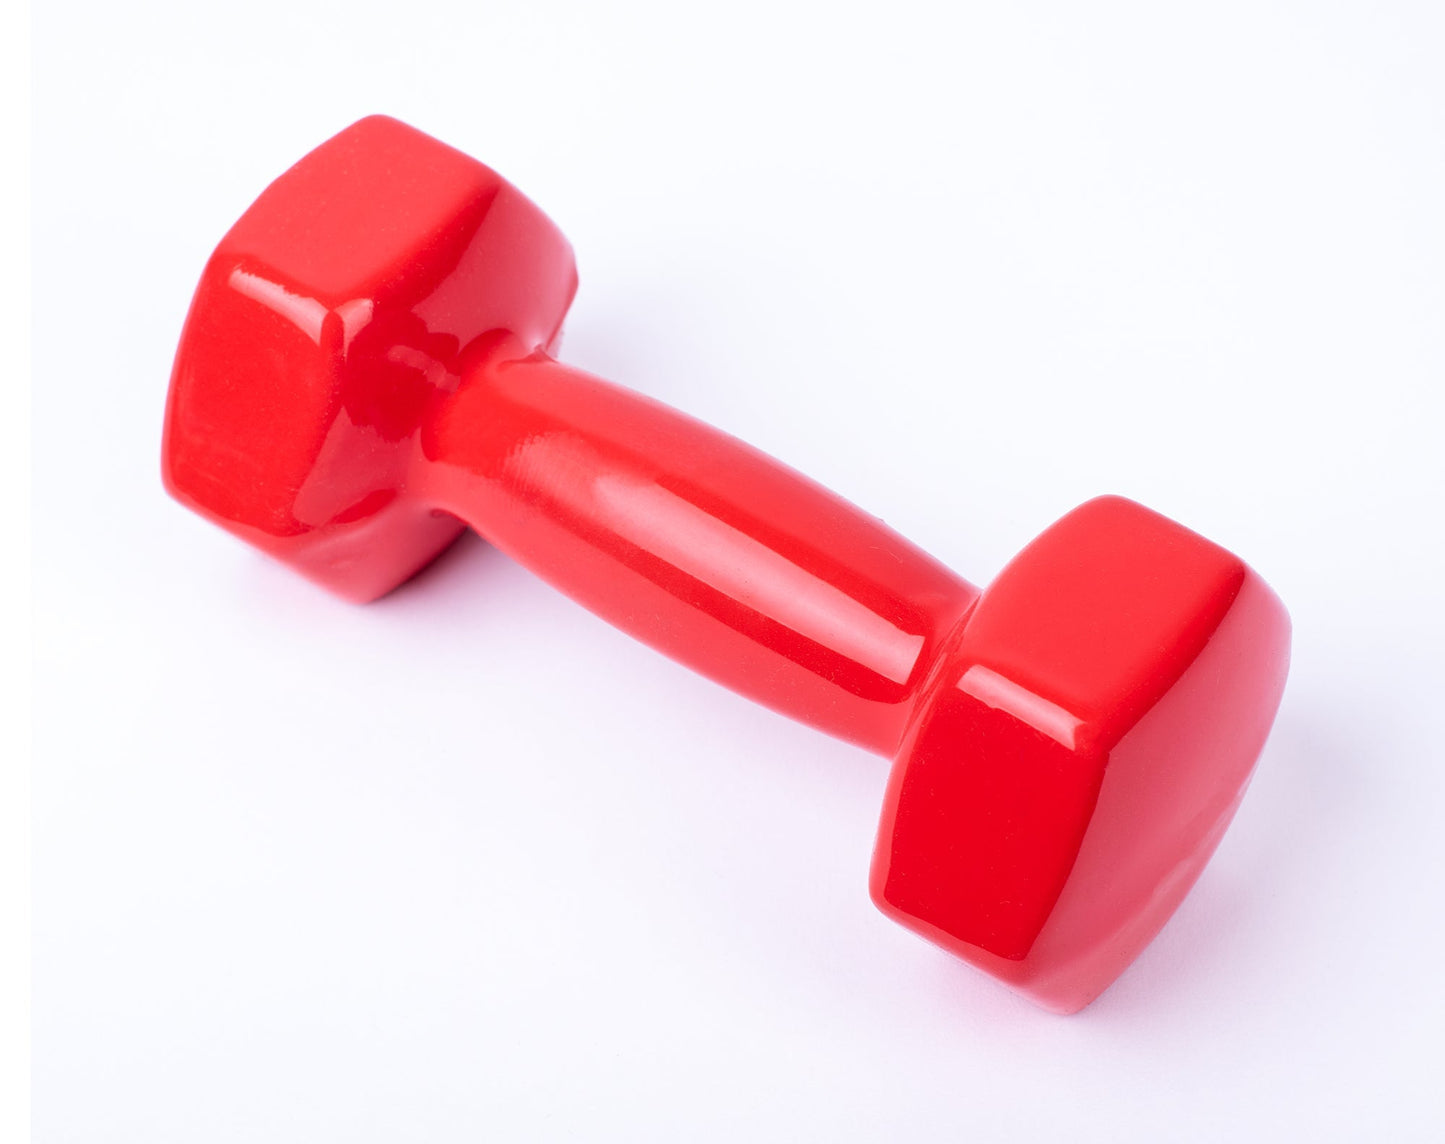 دامبل حديد للتمارين الرياضية بطبقة من الفينيل - لون احمر - قطعة واحدة - وزن 6 كيلو - Kanteen - كانتين